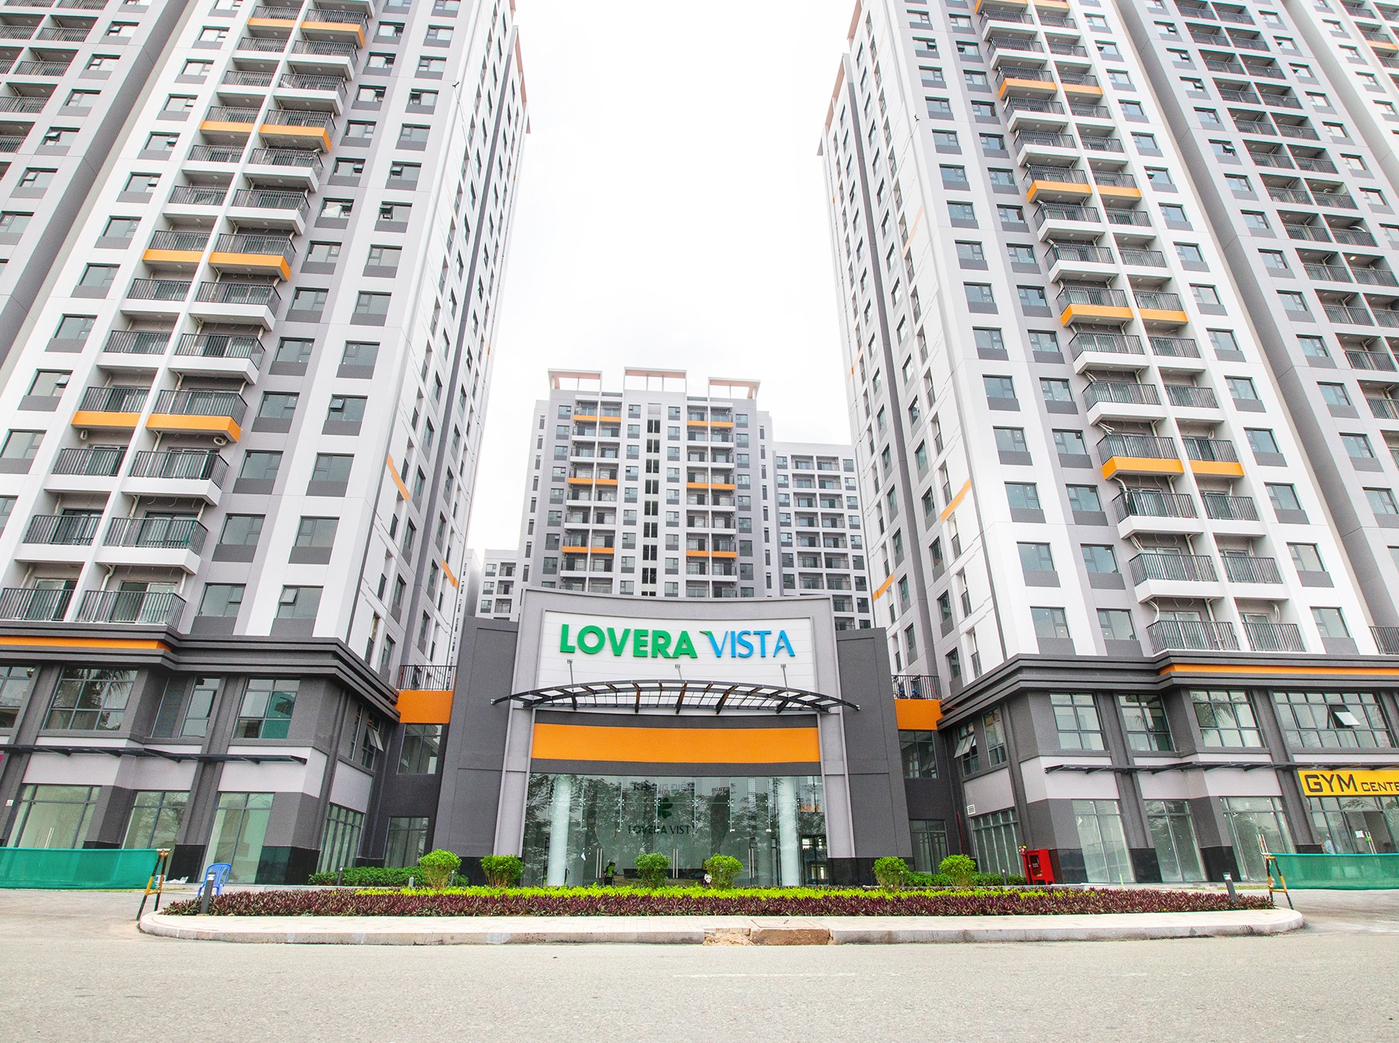 Lovera-vista-1.jpg